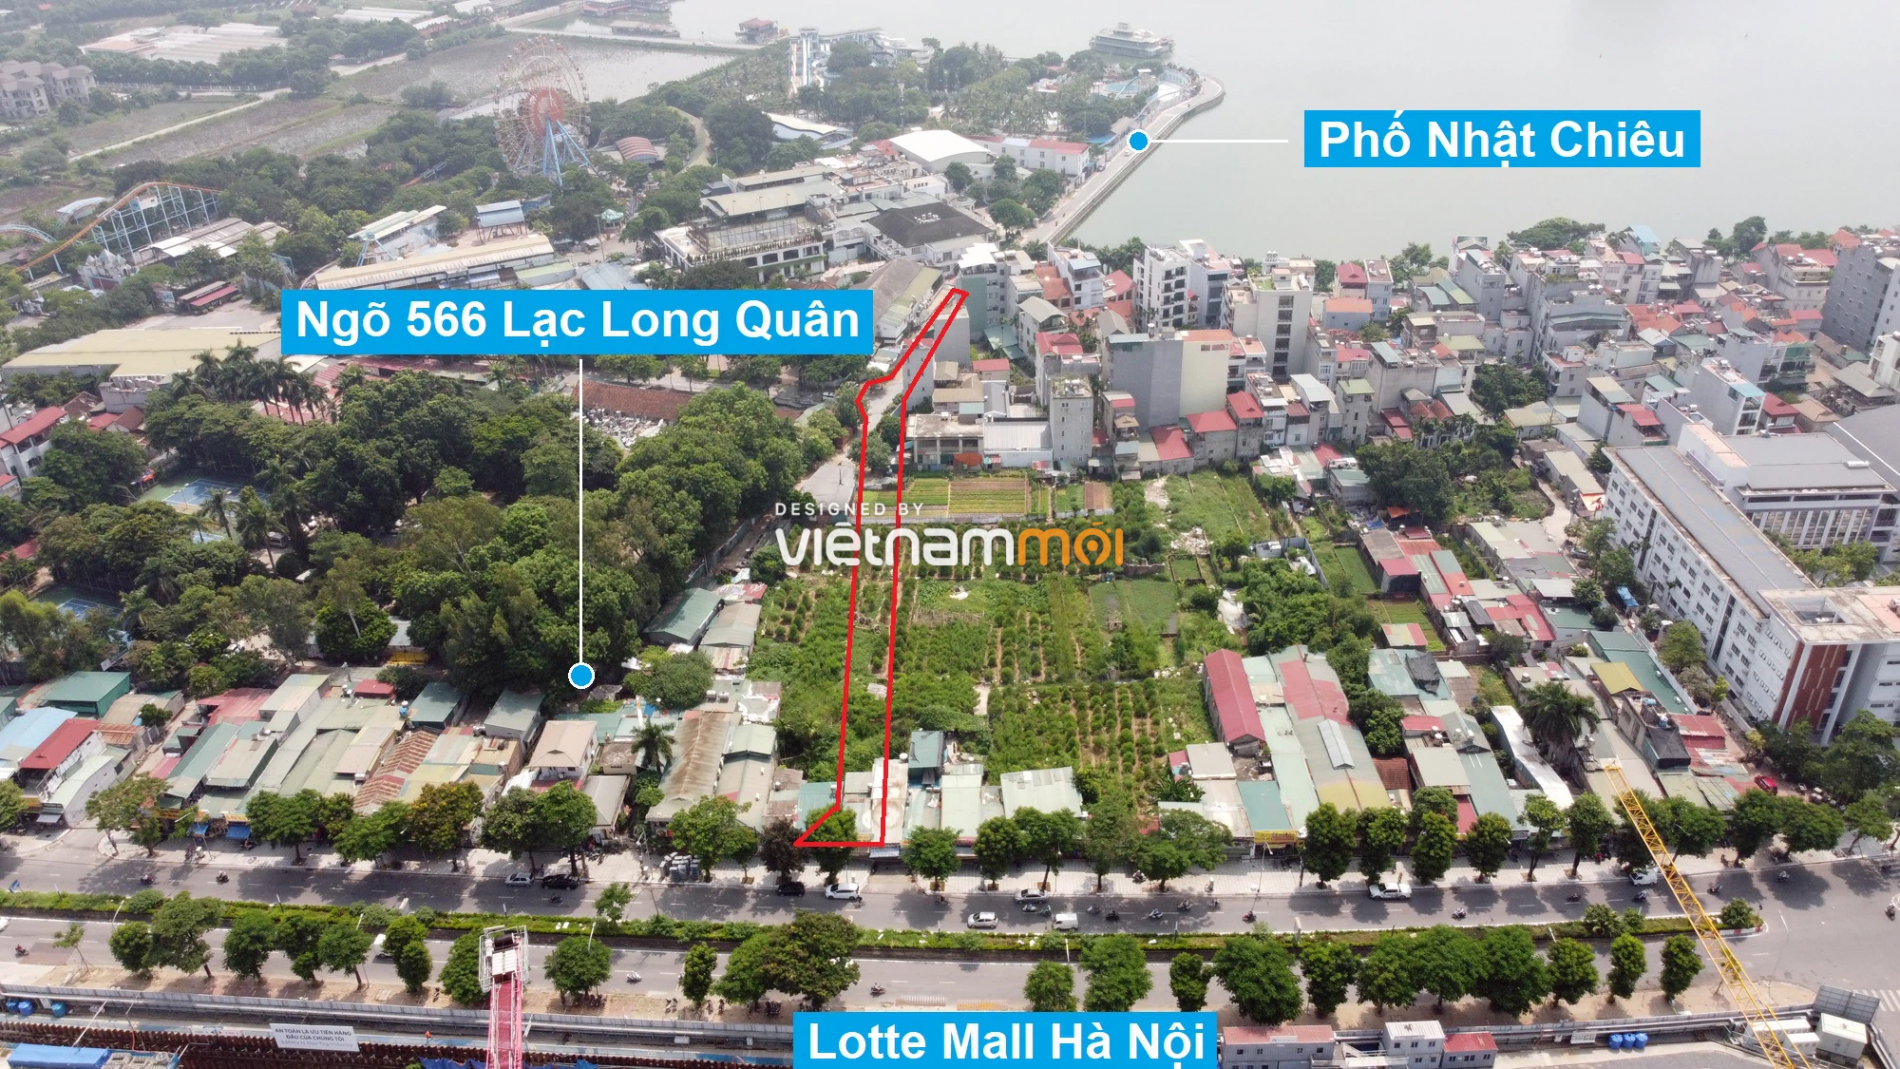 Những khu đất sắp thu hồi để mở đường ở quận Tây Hồ, Hà Nội (phần 3) - Ảnh 5.